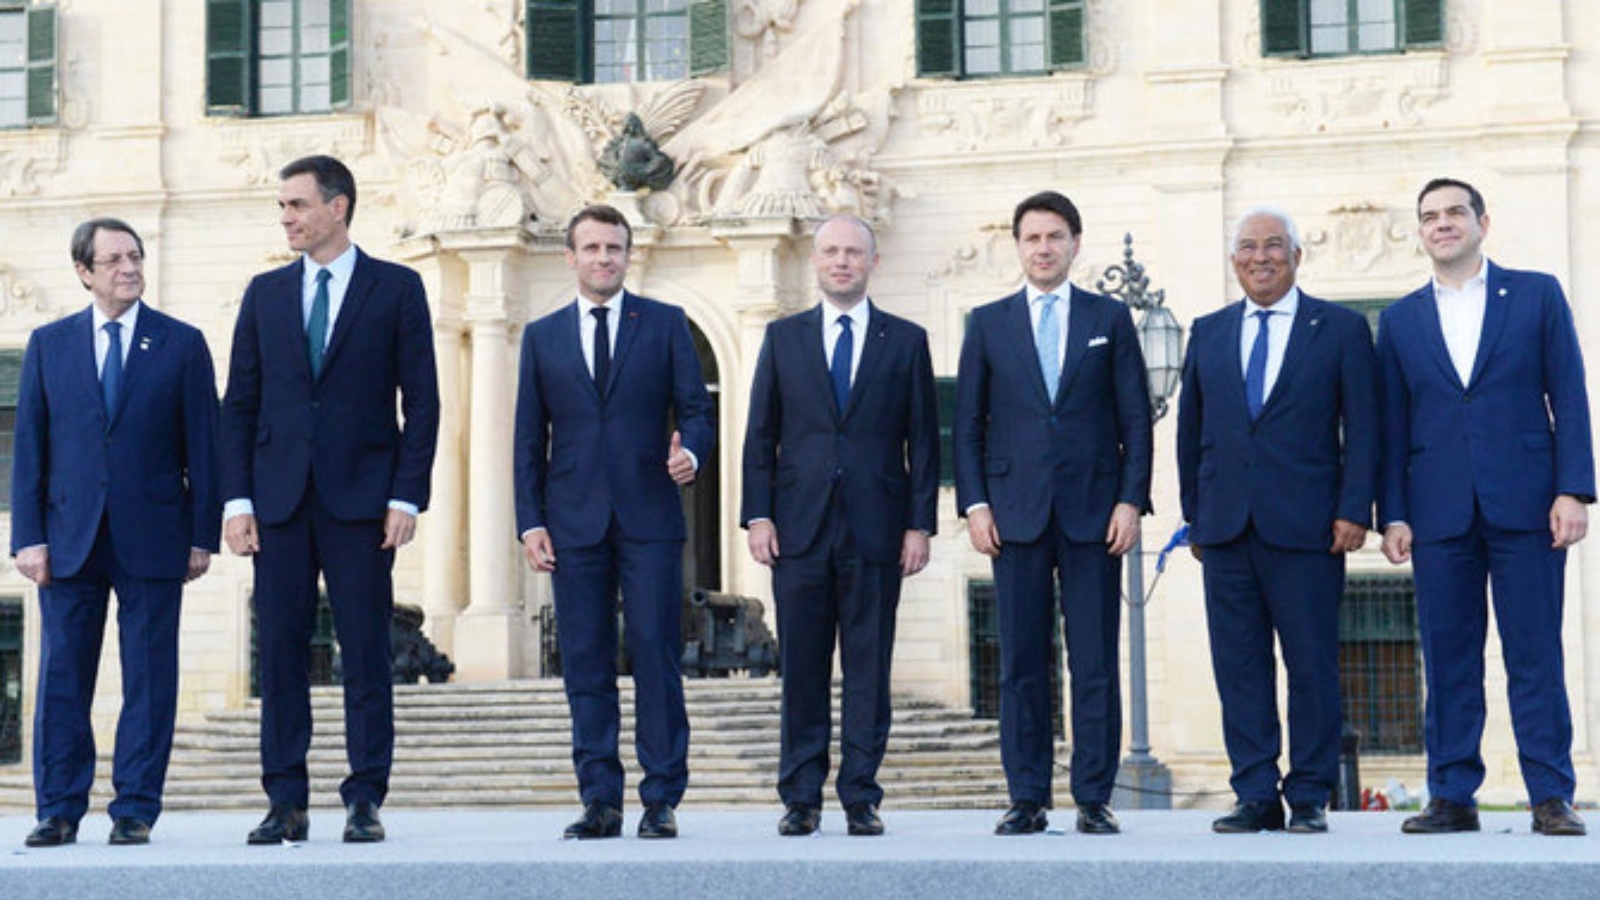 (من اليسار) رئيس قبرص نيكوس أناستاسيادس، ورئيس الوزراء الإسباني بيدرو سانشيز، والرئيس الفرنسي إيمانويل ماكرون، ورئيس وزراء مالطا جوزيف مسقط، ورئيس الوزراء الإيطالي جوزيبي كونتي، ورئيس الوزراء البرتغالي أنطونيو كوستا، ورئيس الوزراء اليوناني أليكسيس تسيبراس في صورة بالخارج، في فاليتا، بعد 